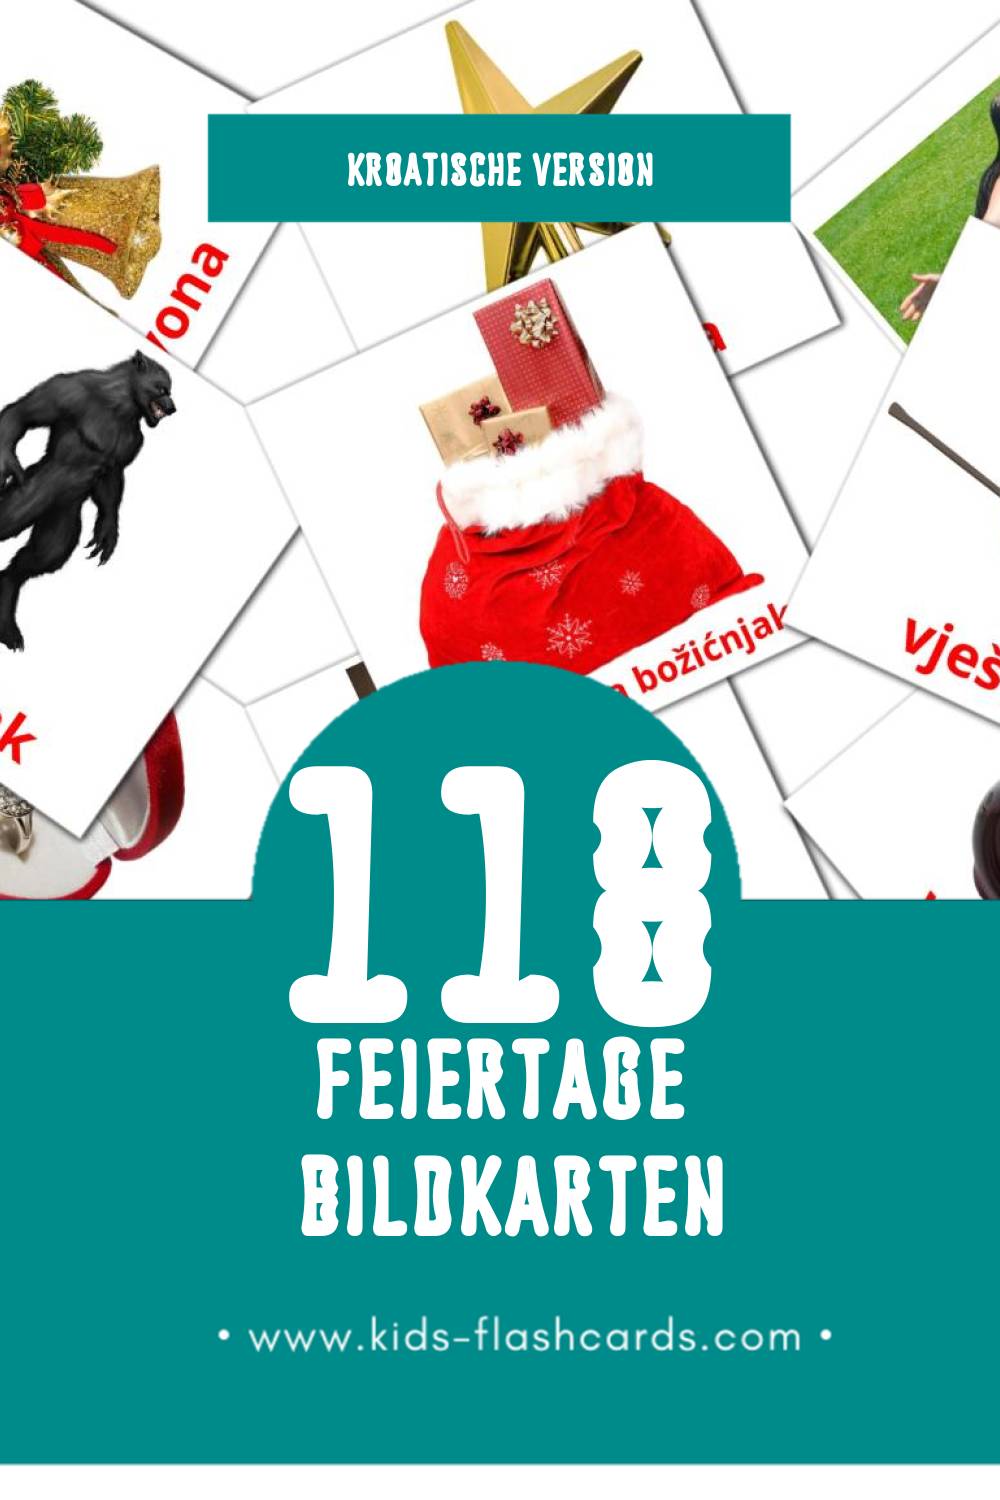 Visual Praznik Flashcards für Kleinkinder (118 Karten in Kroatisch)